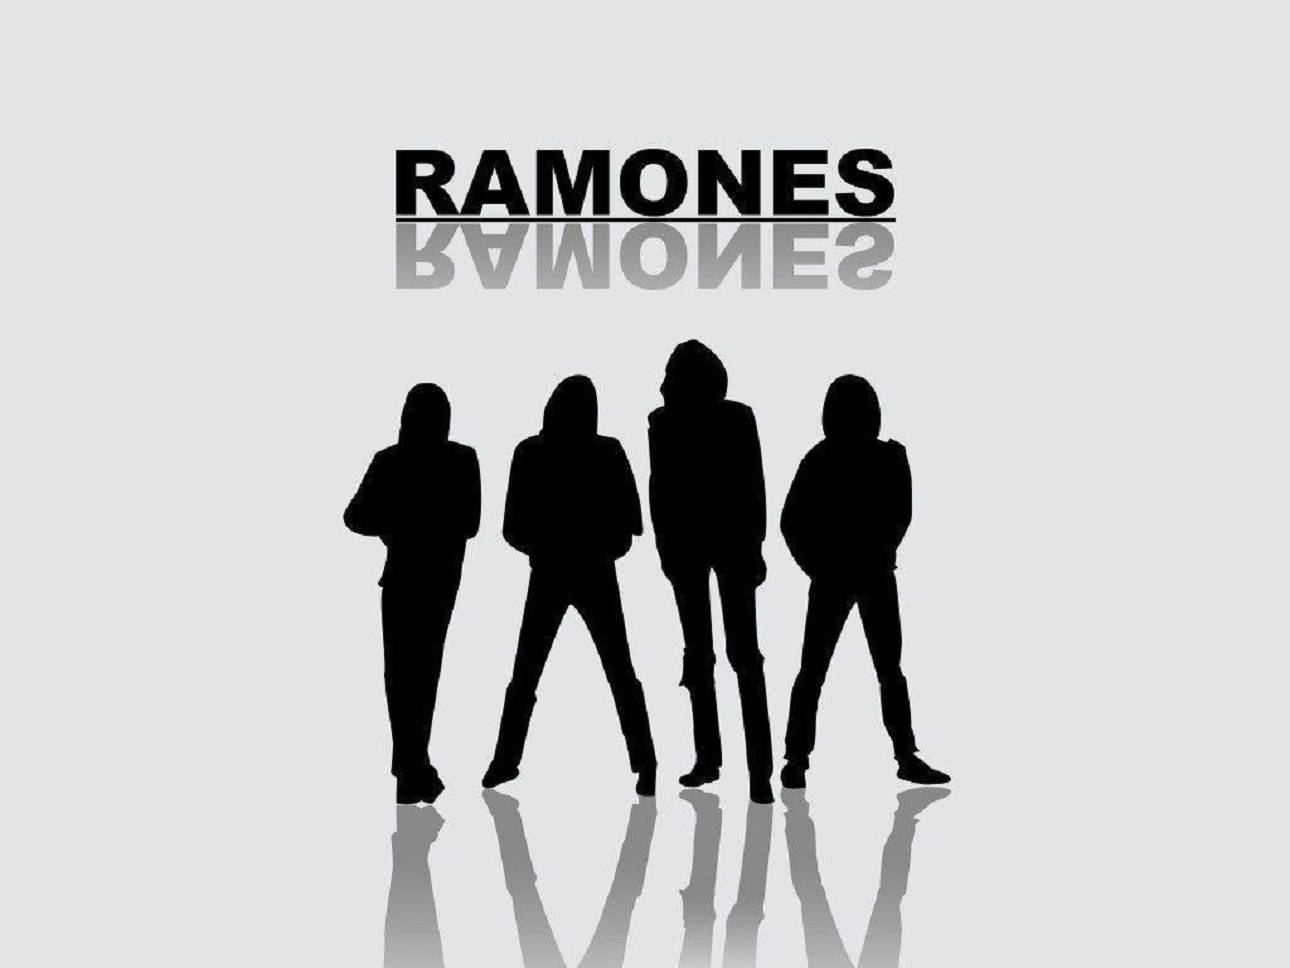 Ilustraciónnegra De La Banda De Rock Estadounidense Ramones Fondo de pantalla